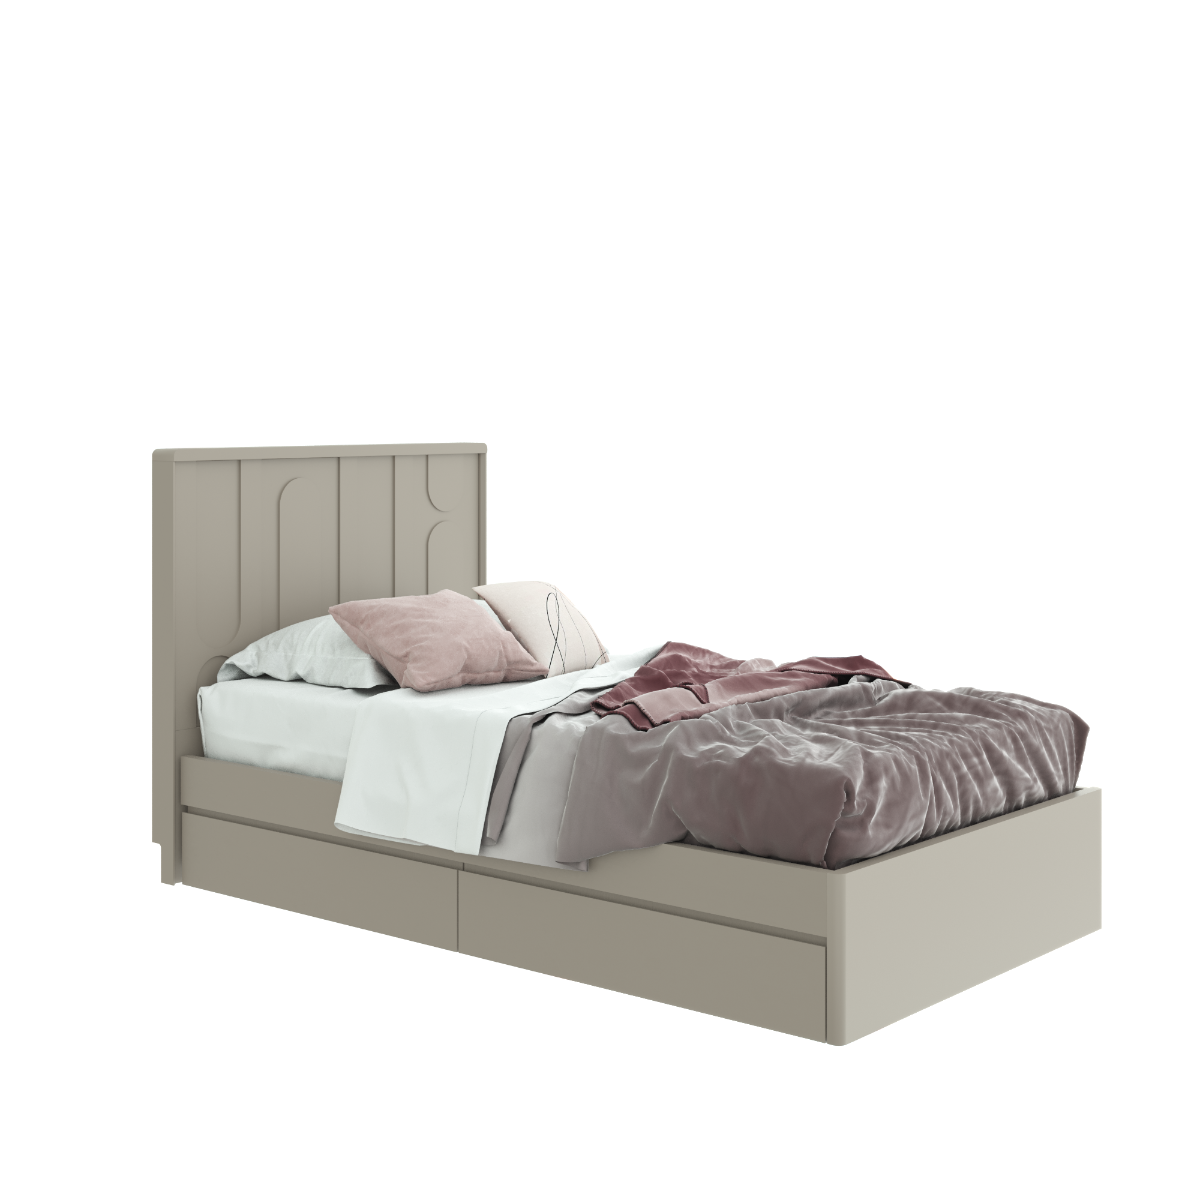 เตียงนอนขนาด 3.5 ฟุต รุ่น Lavique สีครีม1